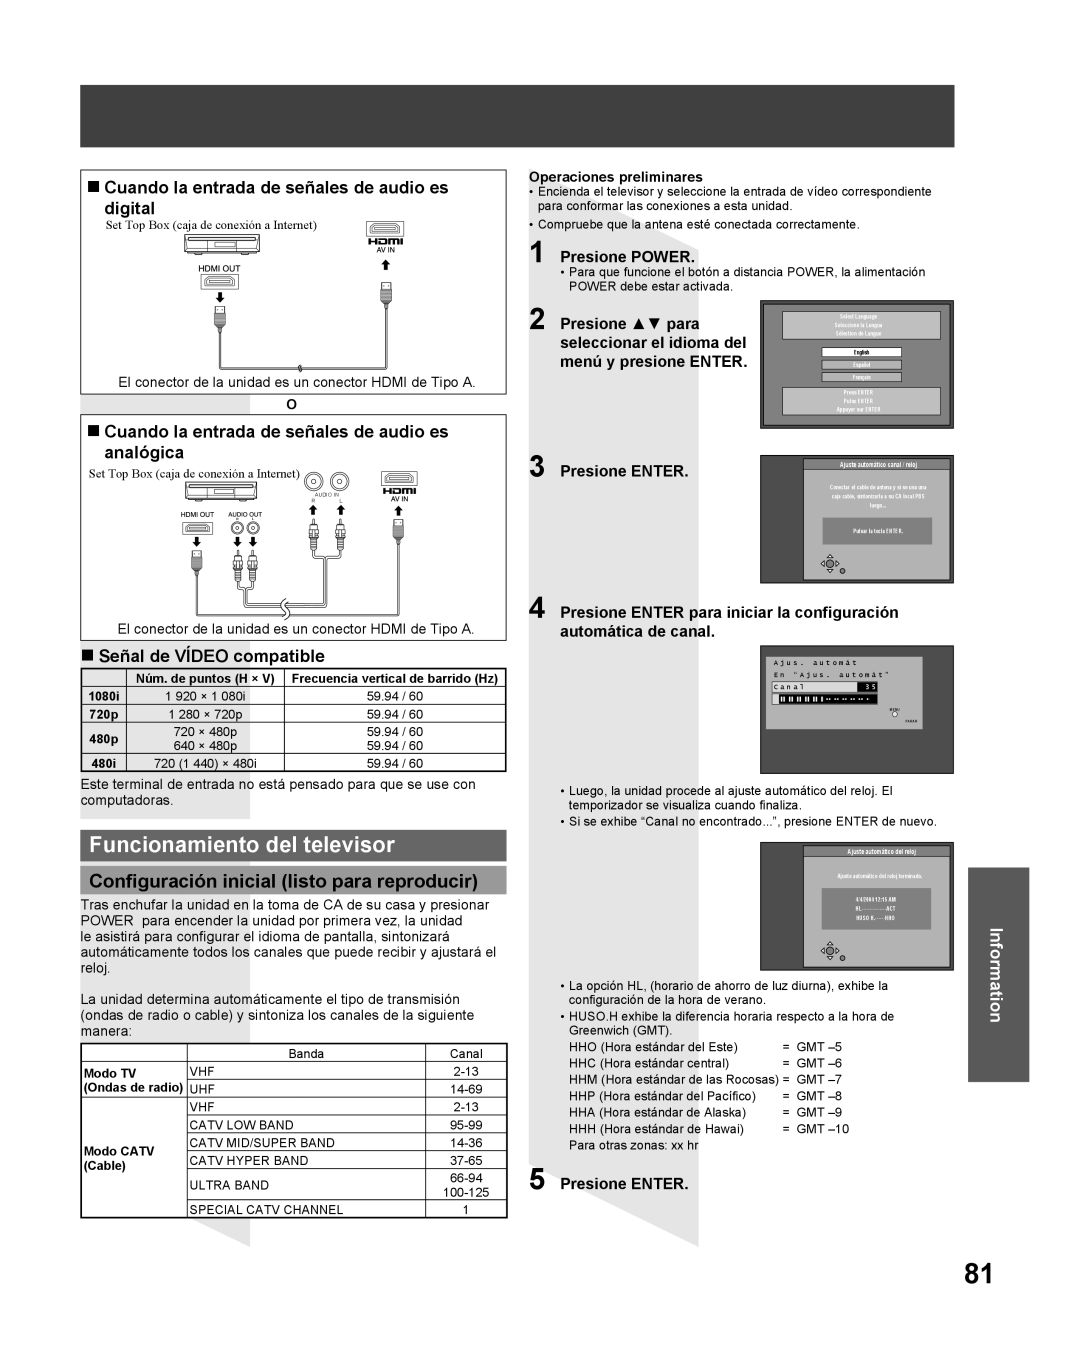 Panasonic TC 22LR30 Funcionamiento del televisor, Configuración inicial listo para reproducir, Señal de VÍDEO compatible 